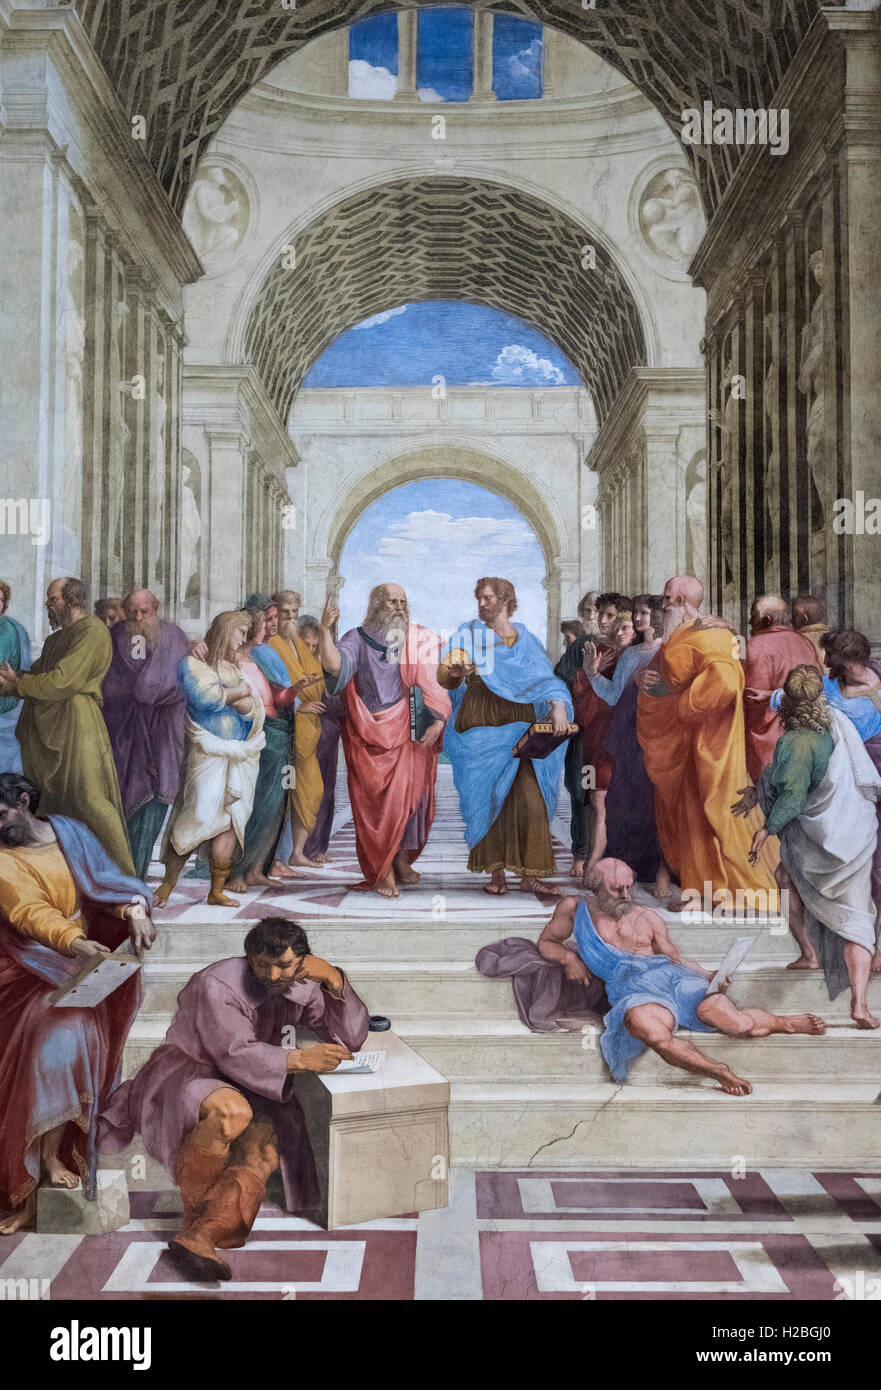 Raphael (1483-1520), la Scuola di Atene affresco (1509-1511). Stanza della Segnatura, Musei Vaticani a Roma. Foto Stock